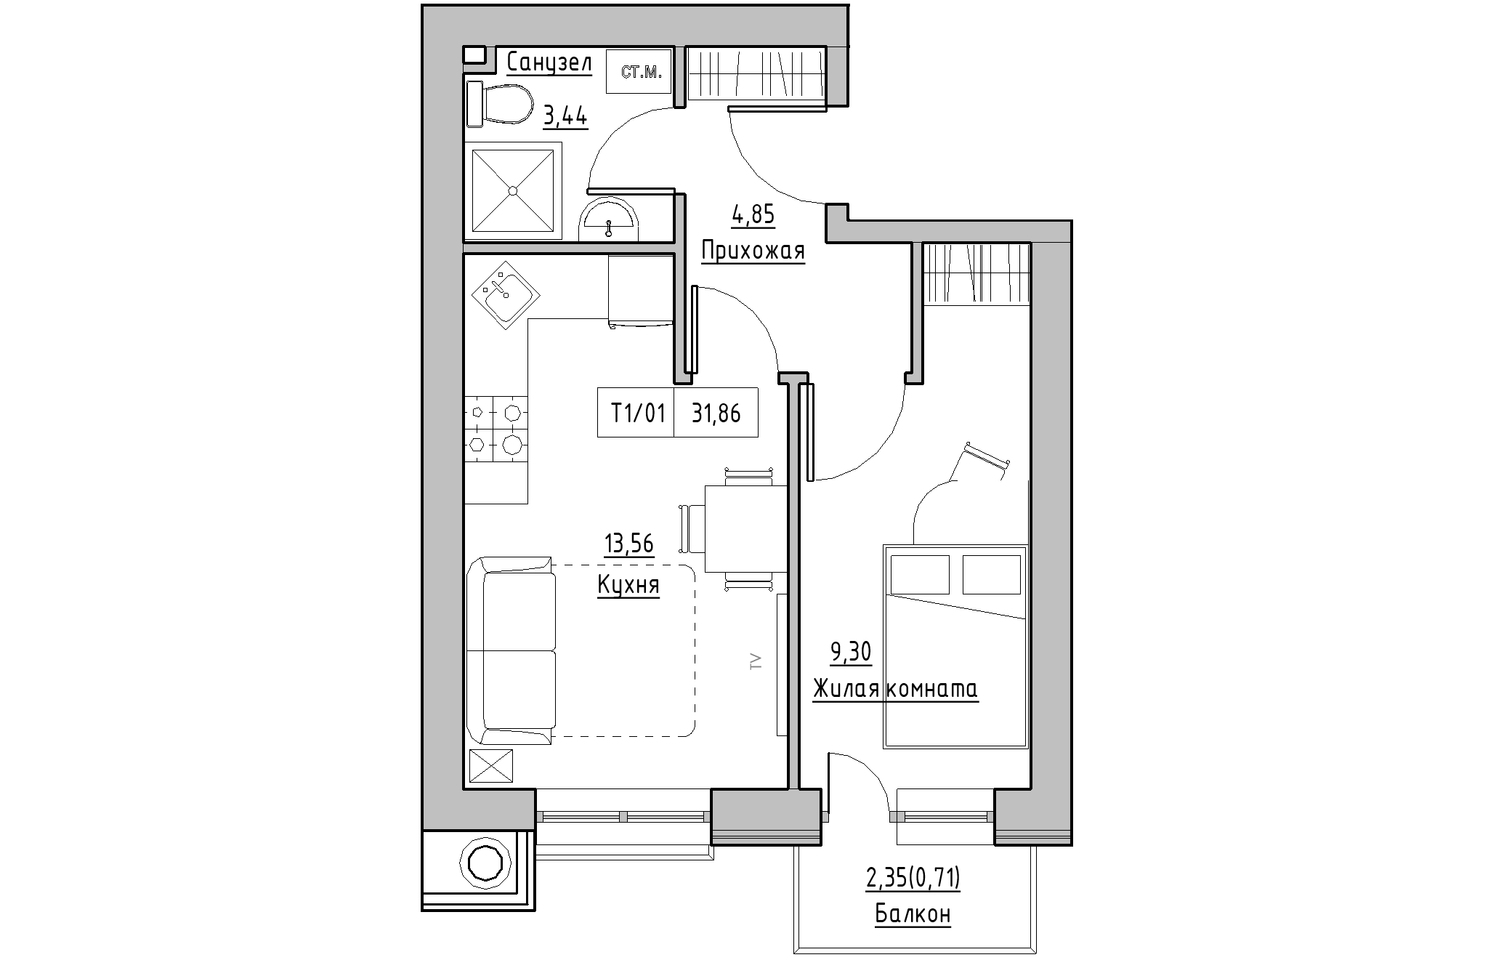 Планировка 1-к квартира площей 31.86м2, KS-010-04/0003.